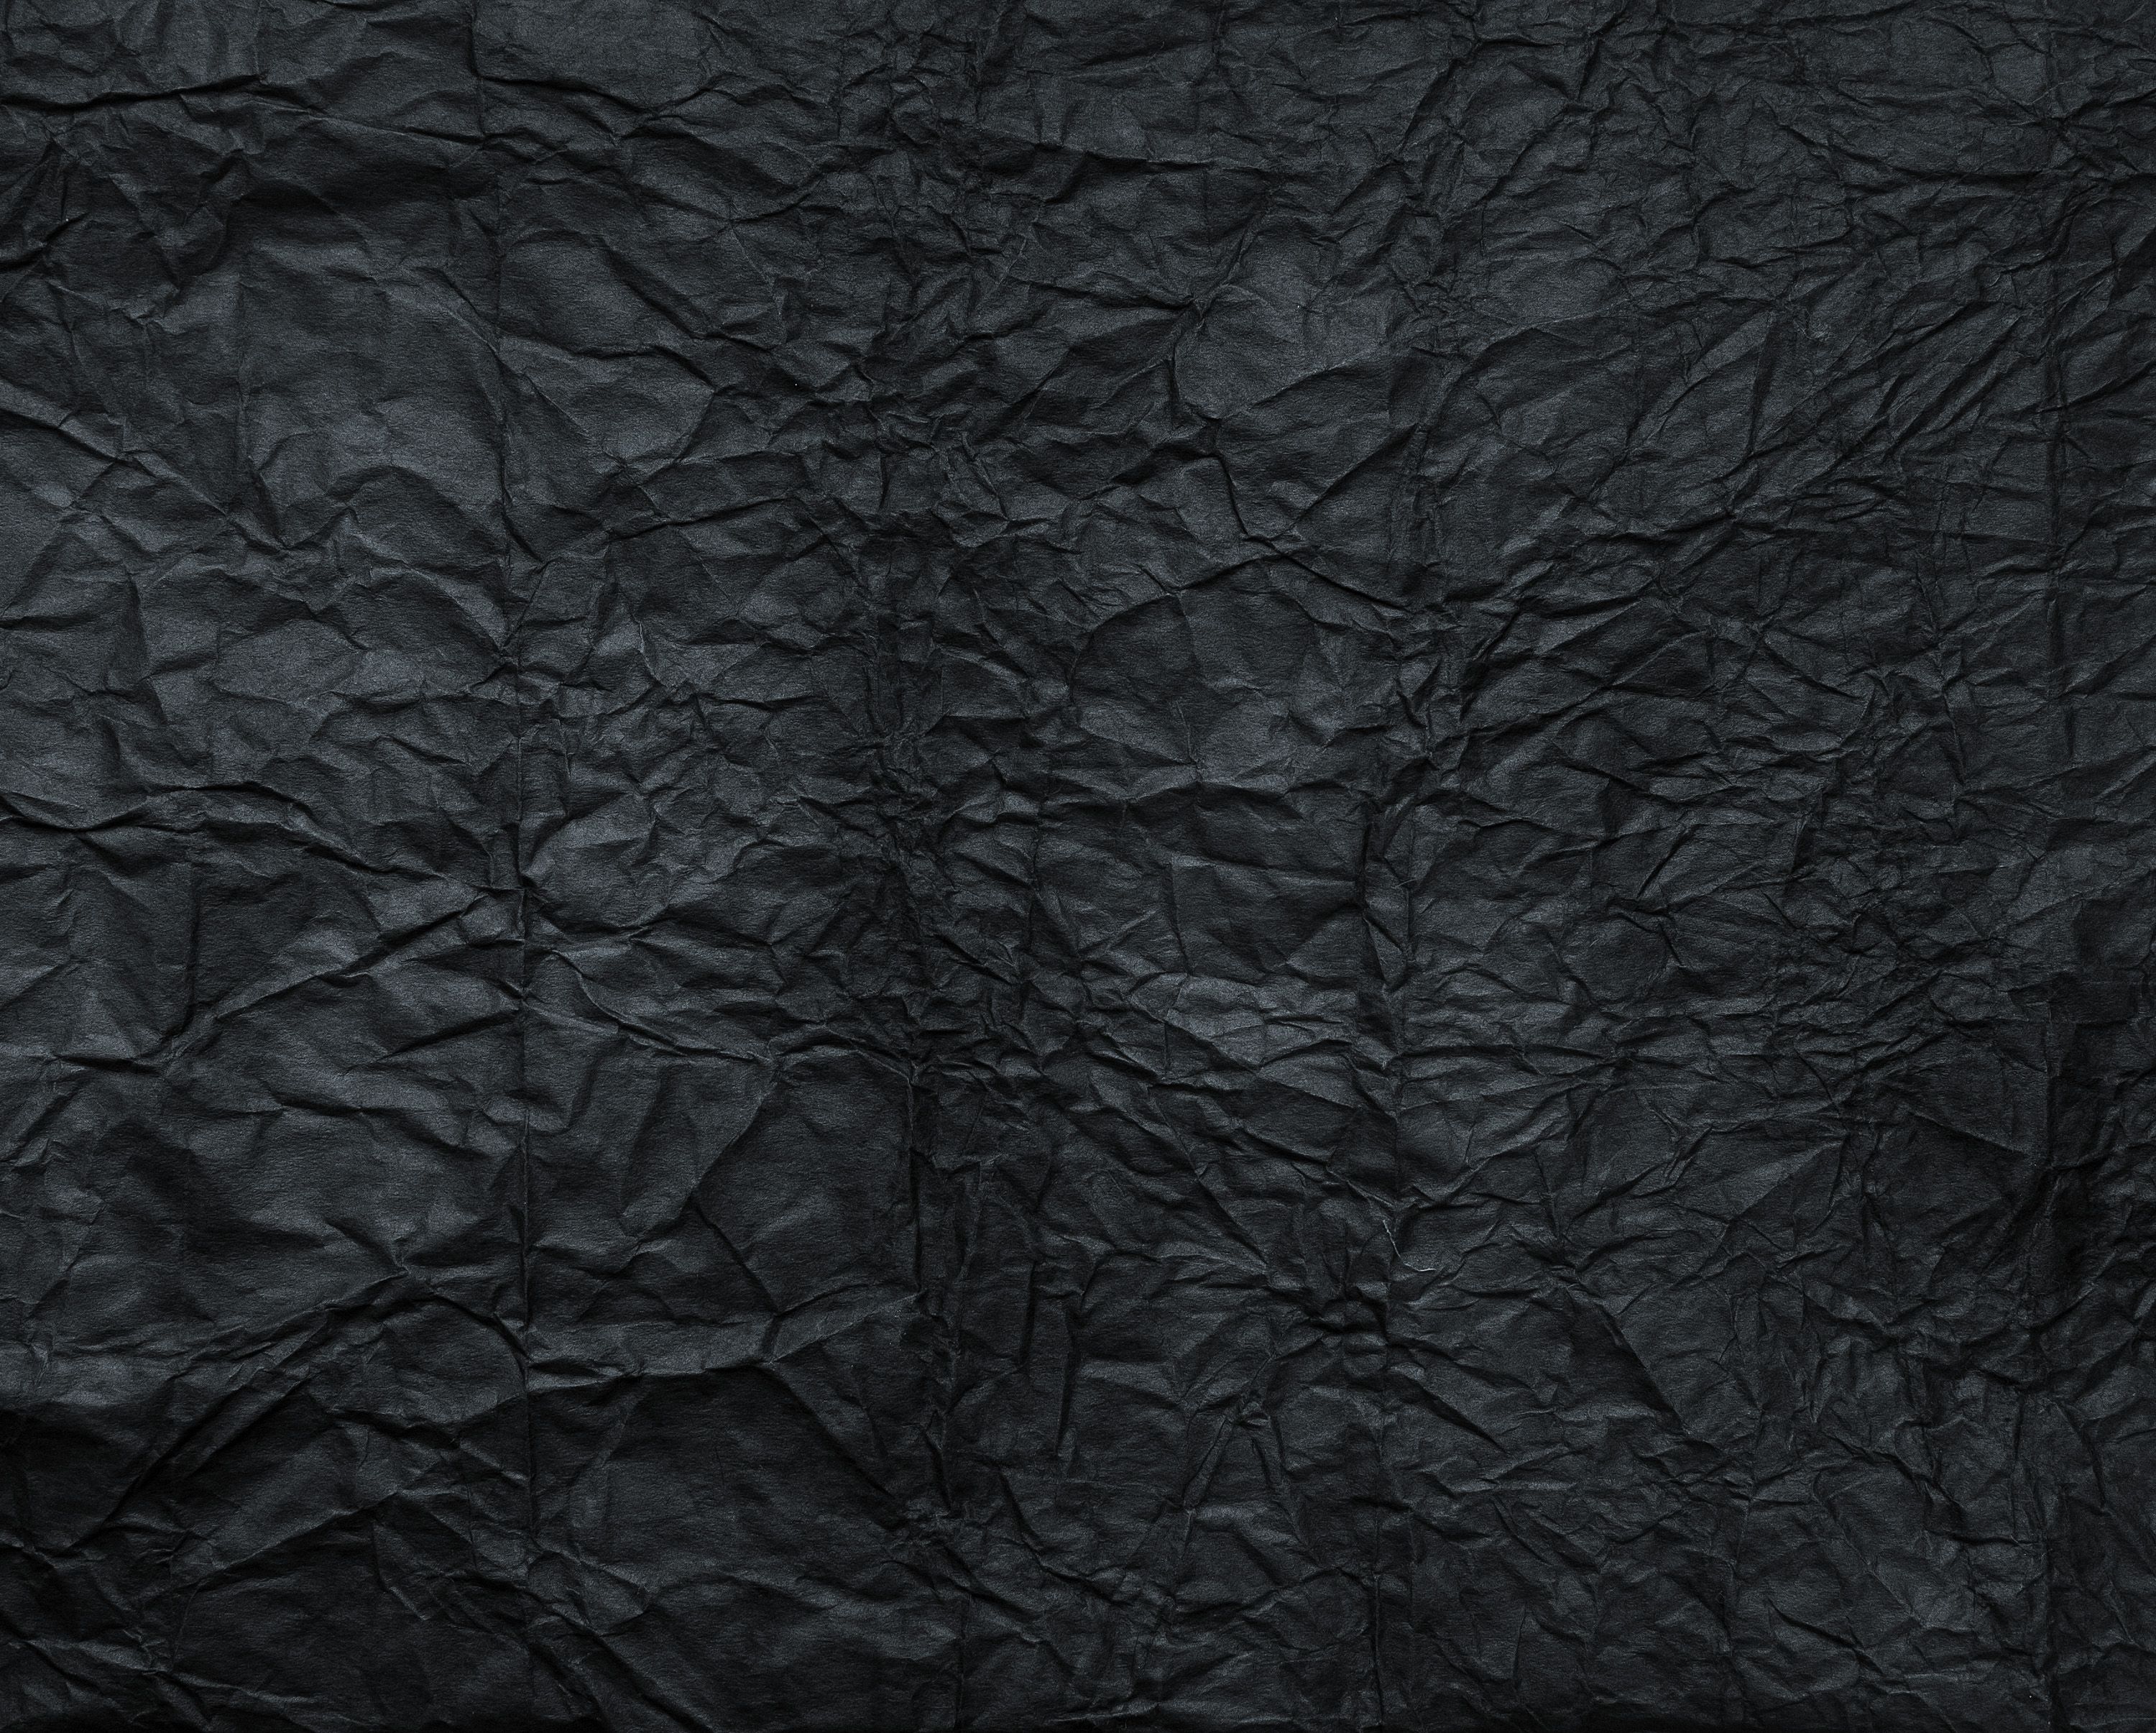 schwarze papiertapete,schwarz,baum,muster,dunkelheit,leder